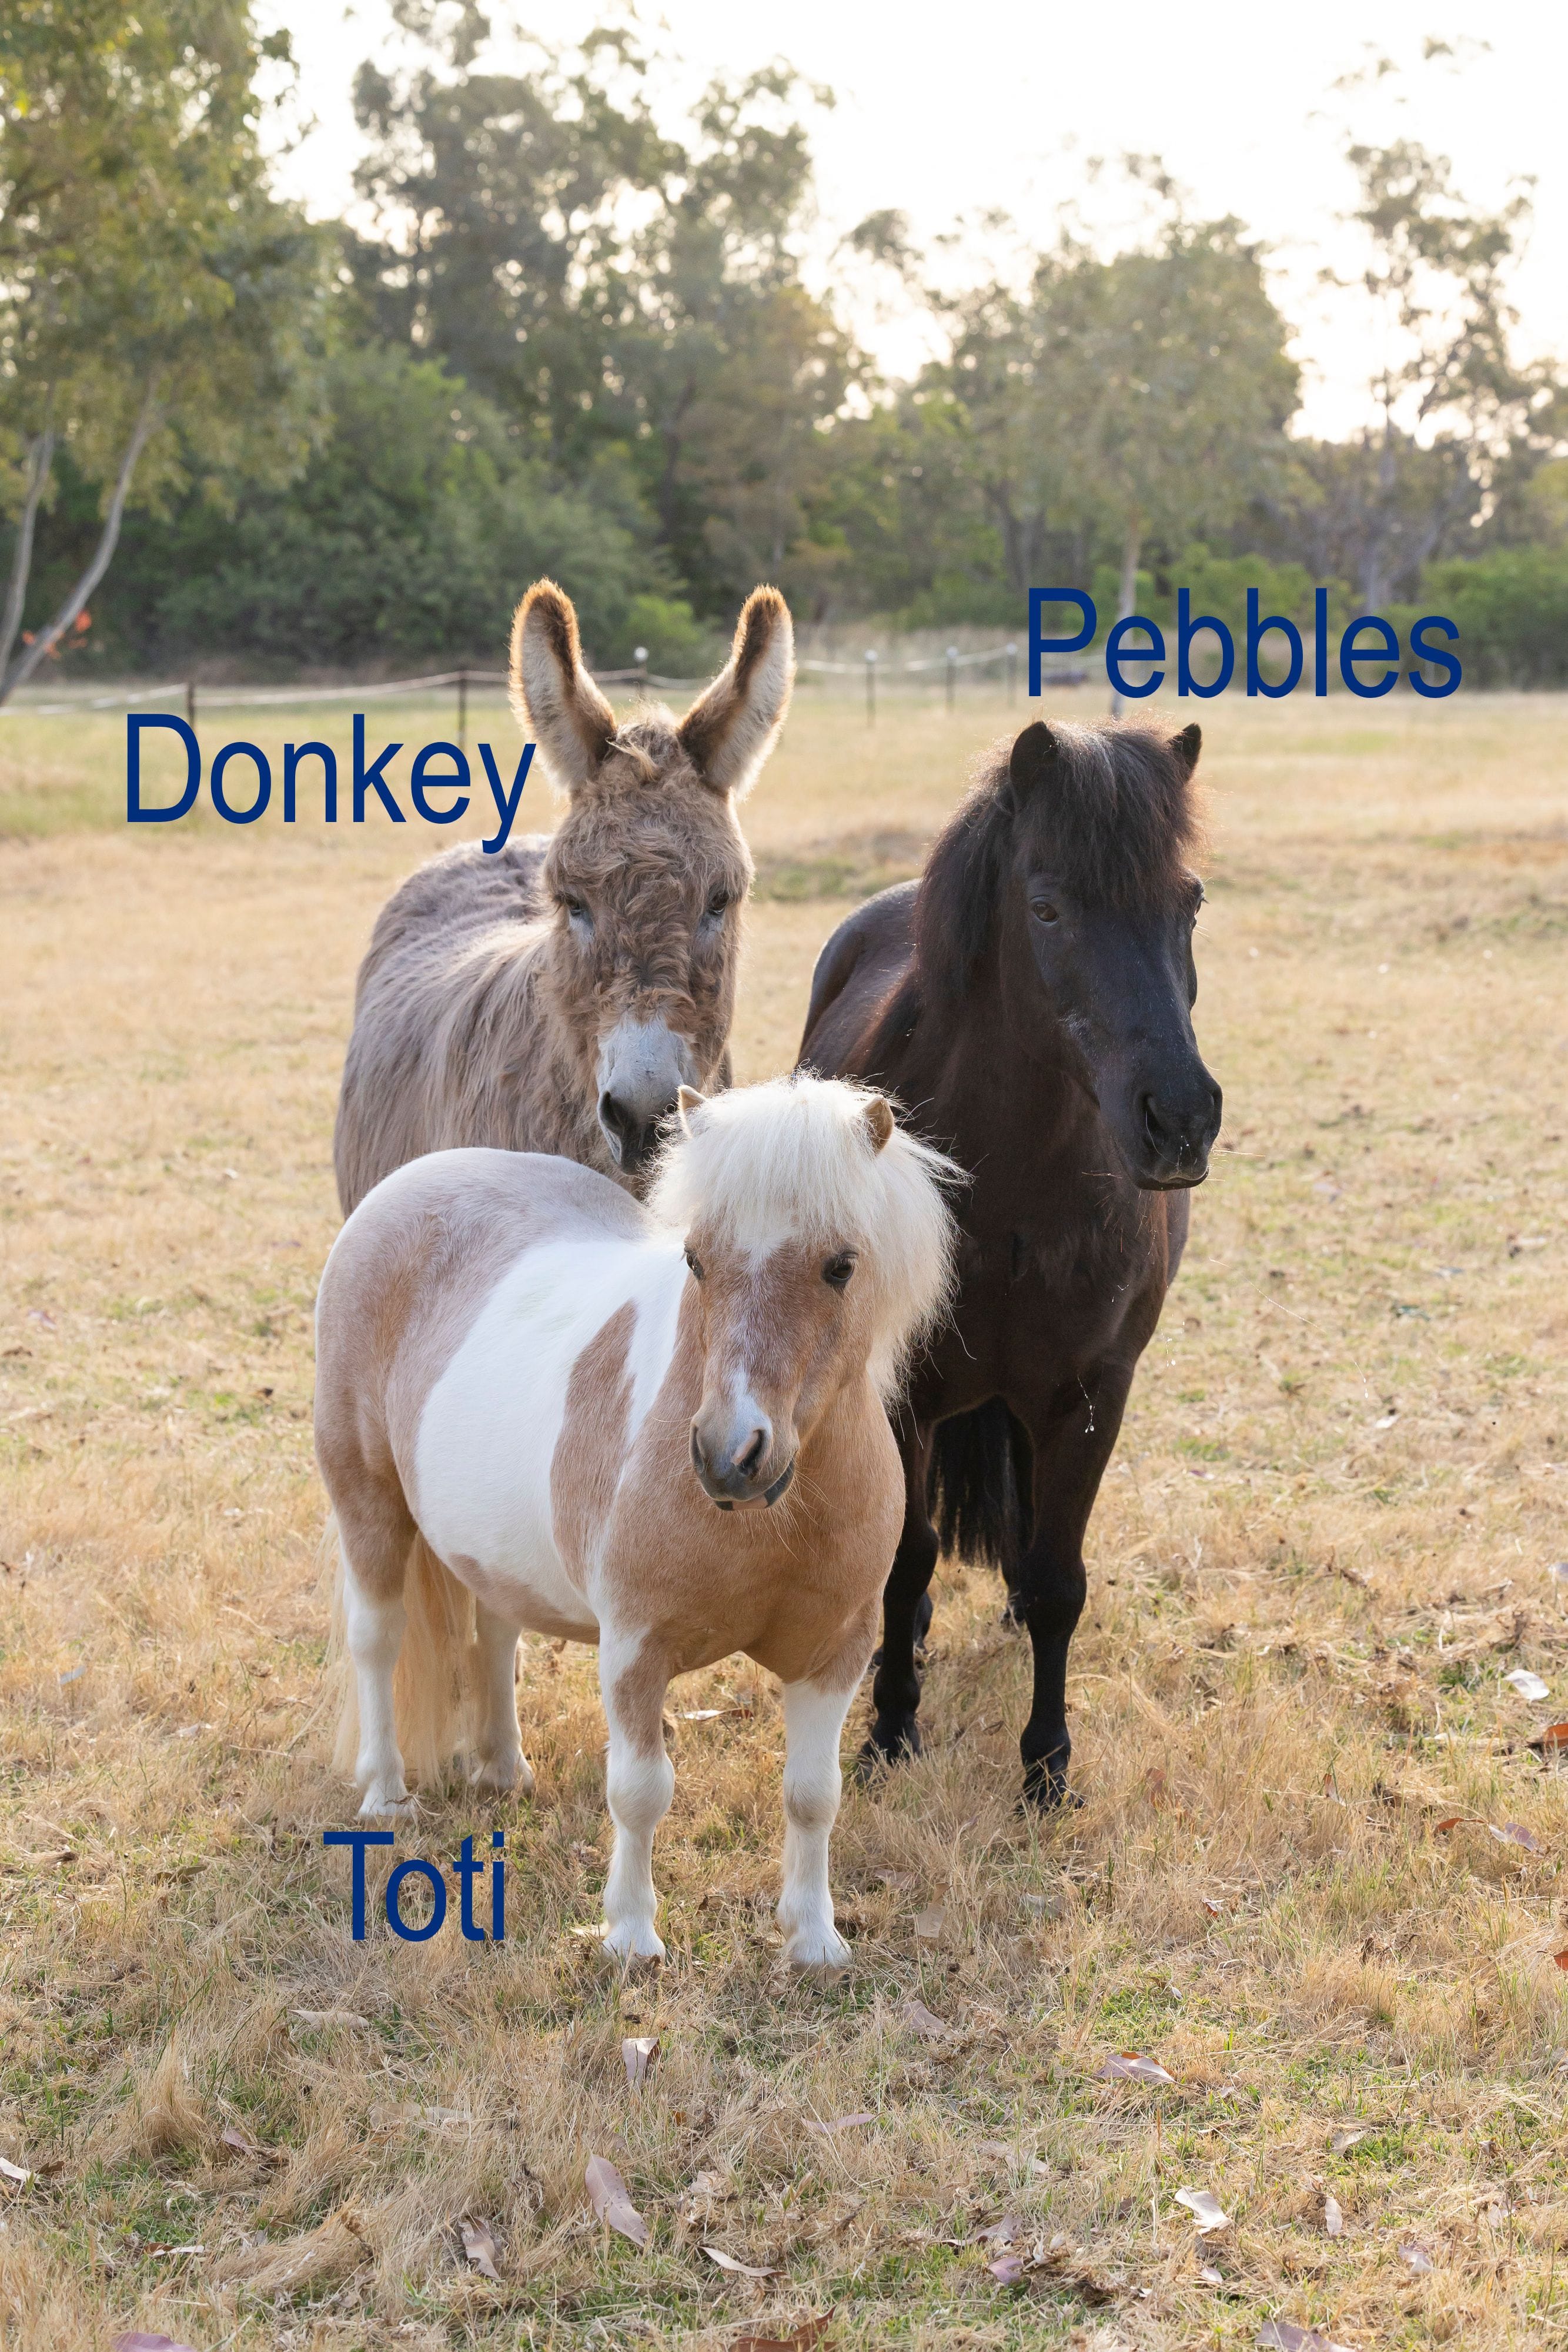 Donkey, Pebbles, Toti